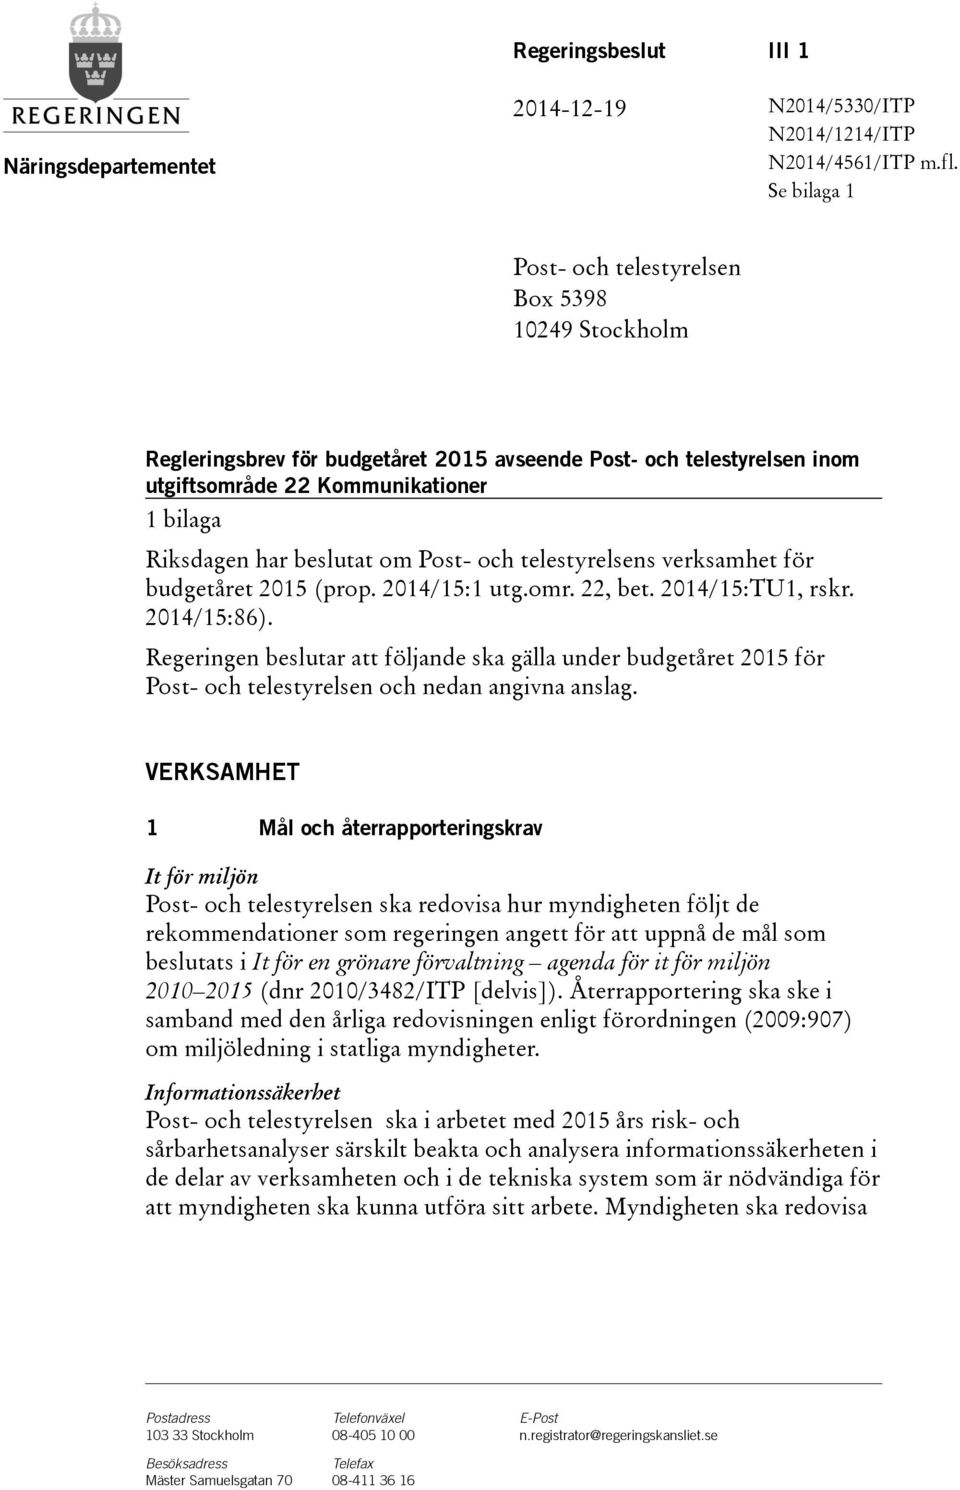 Post- och telestyrelsens verksamhet för budgetåret (prop. 2014/15:1 utg.omr. 22, bet. 2014/15:TU1, rskr. 2014/15:86).